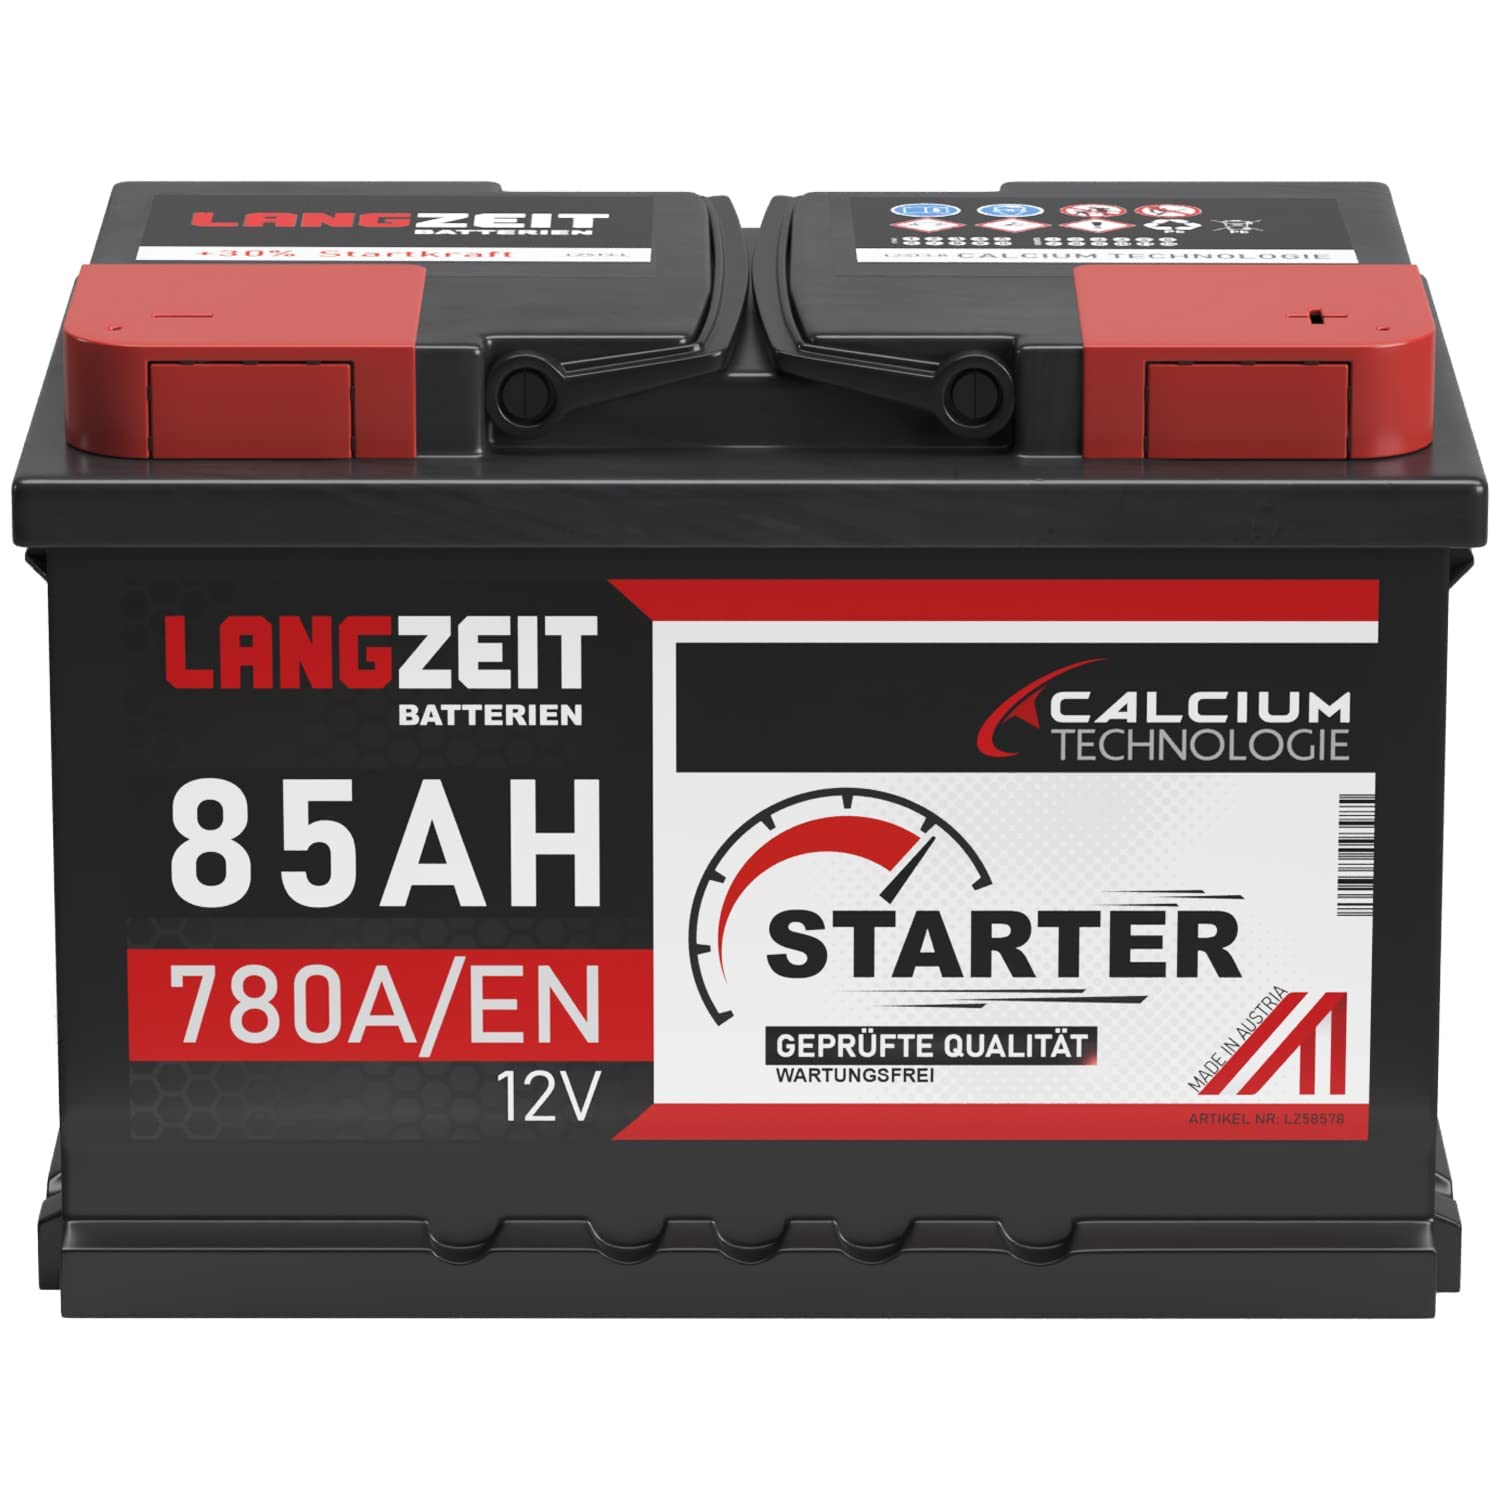 LANGZEIT Autobatterie 85Ah 12V 780A/EN Starterbatterie +30% mehr Leistung ersetzt Batterie 74Ah 72Ah 75Ah 77Ah 80Ah